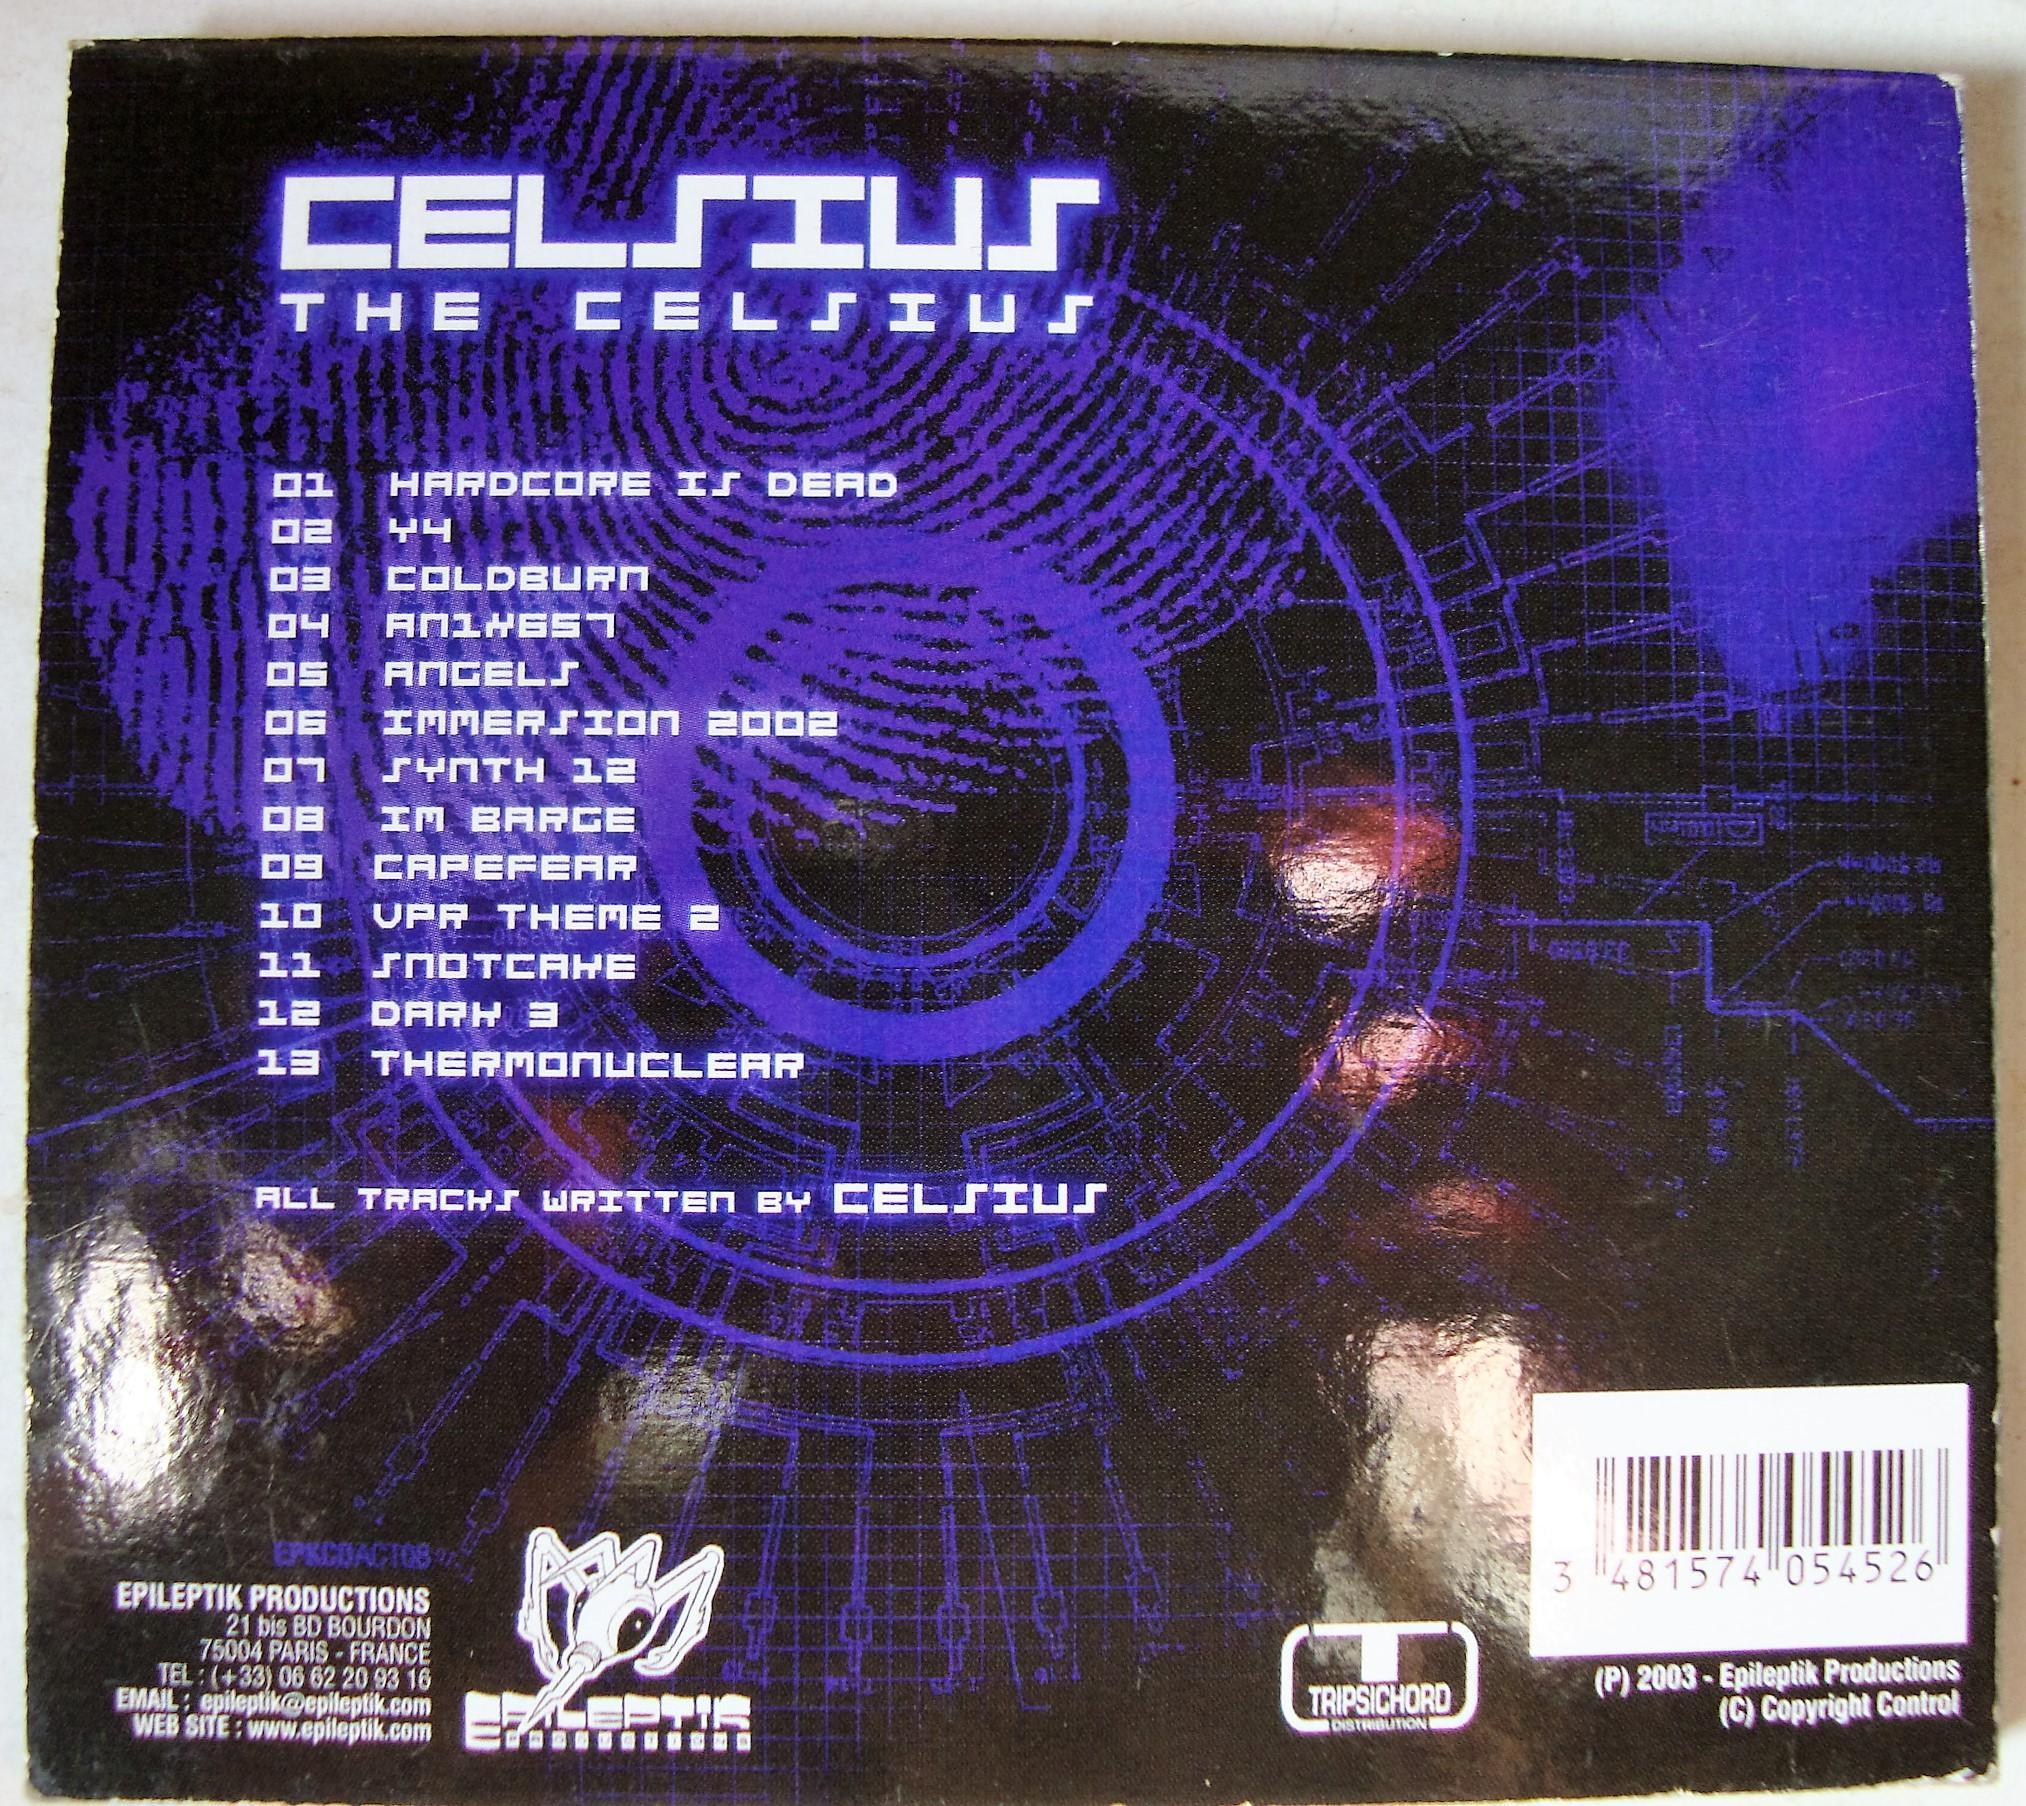 troc de troc cd album celsius the selsius "epileptik act 8 " image 2